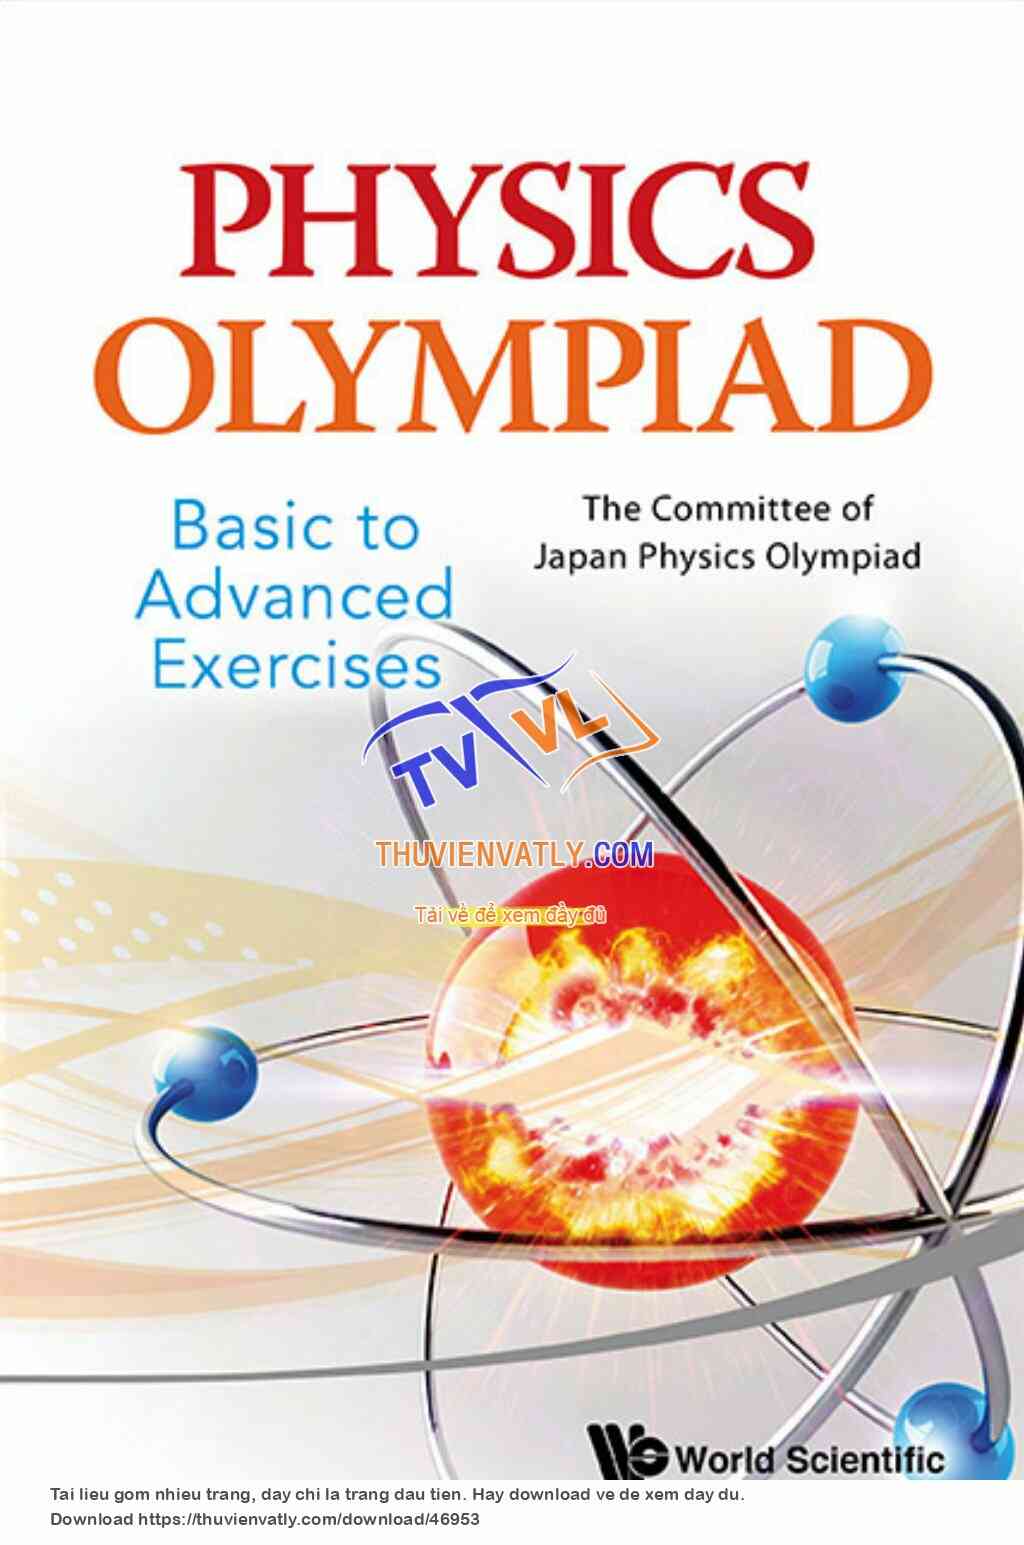 Physics Olympiad Basic to Advanced Exercises 2013